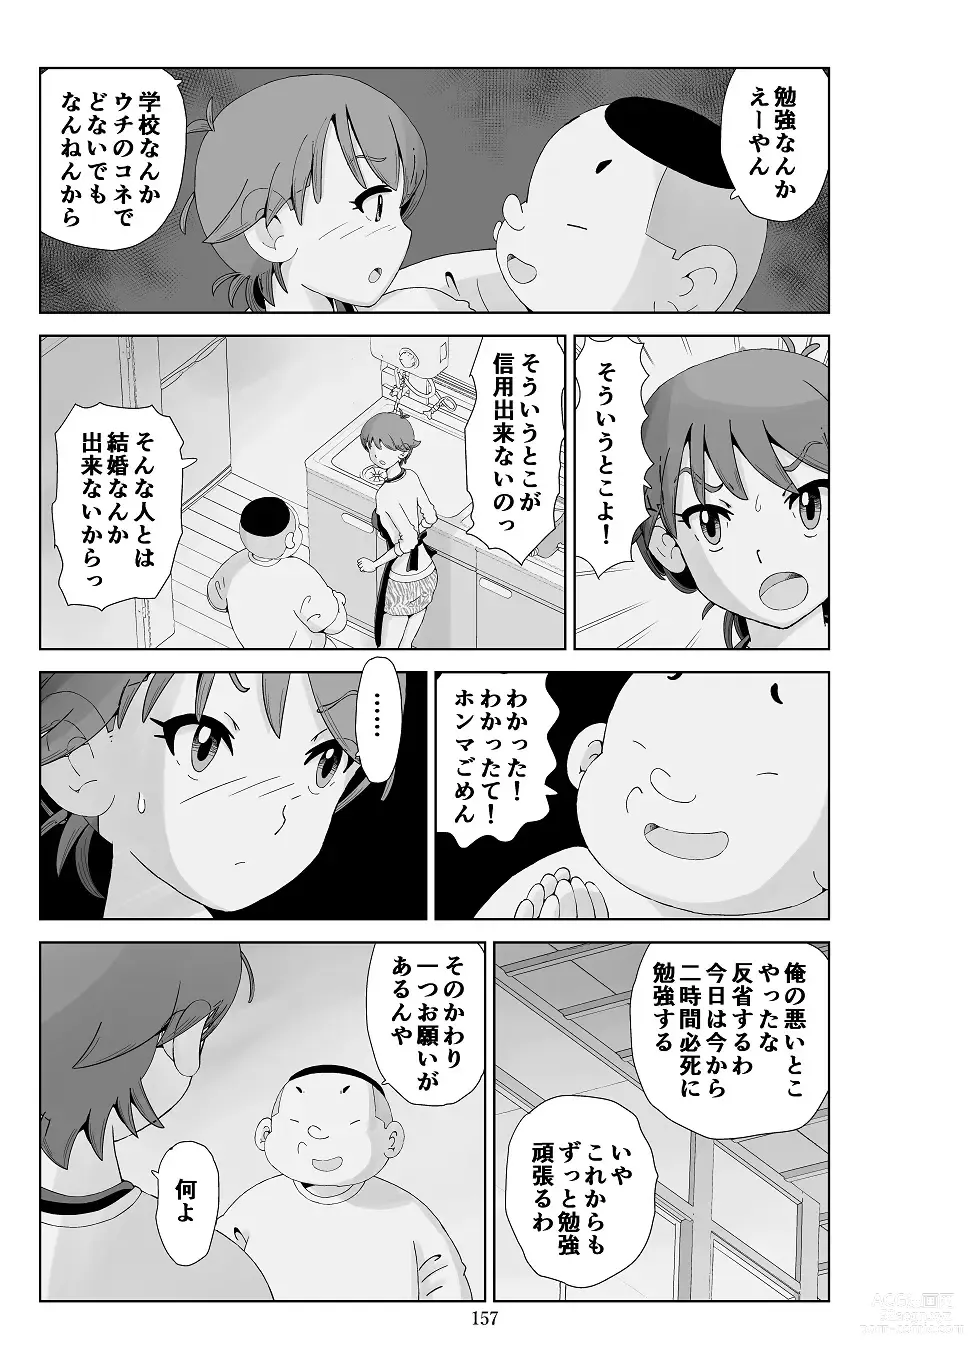 Page 158 of doujinshi Futoshi 3